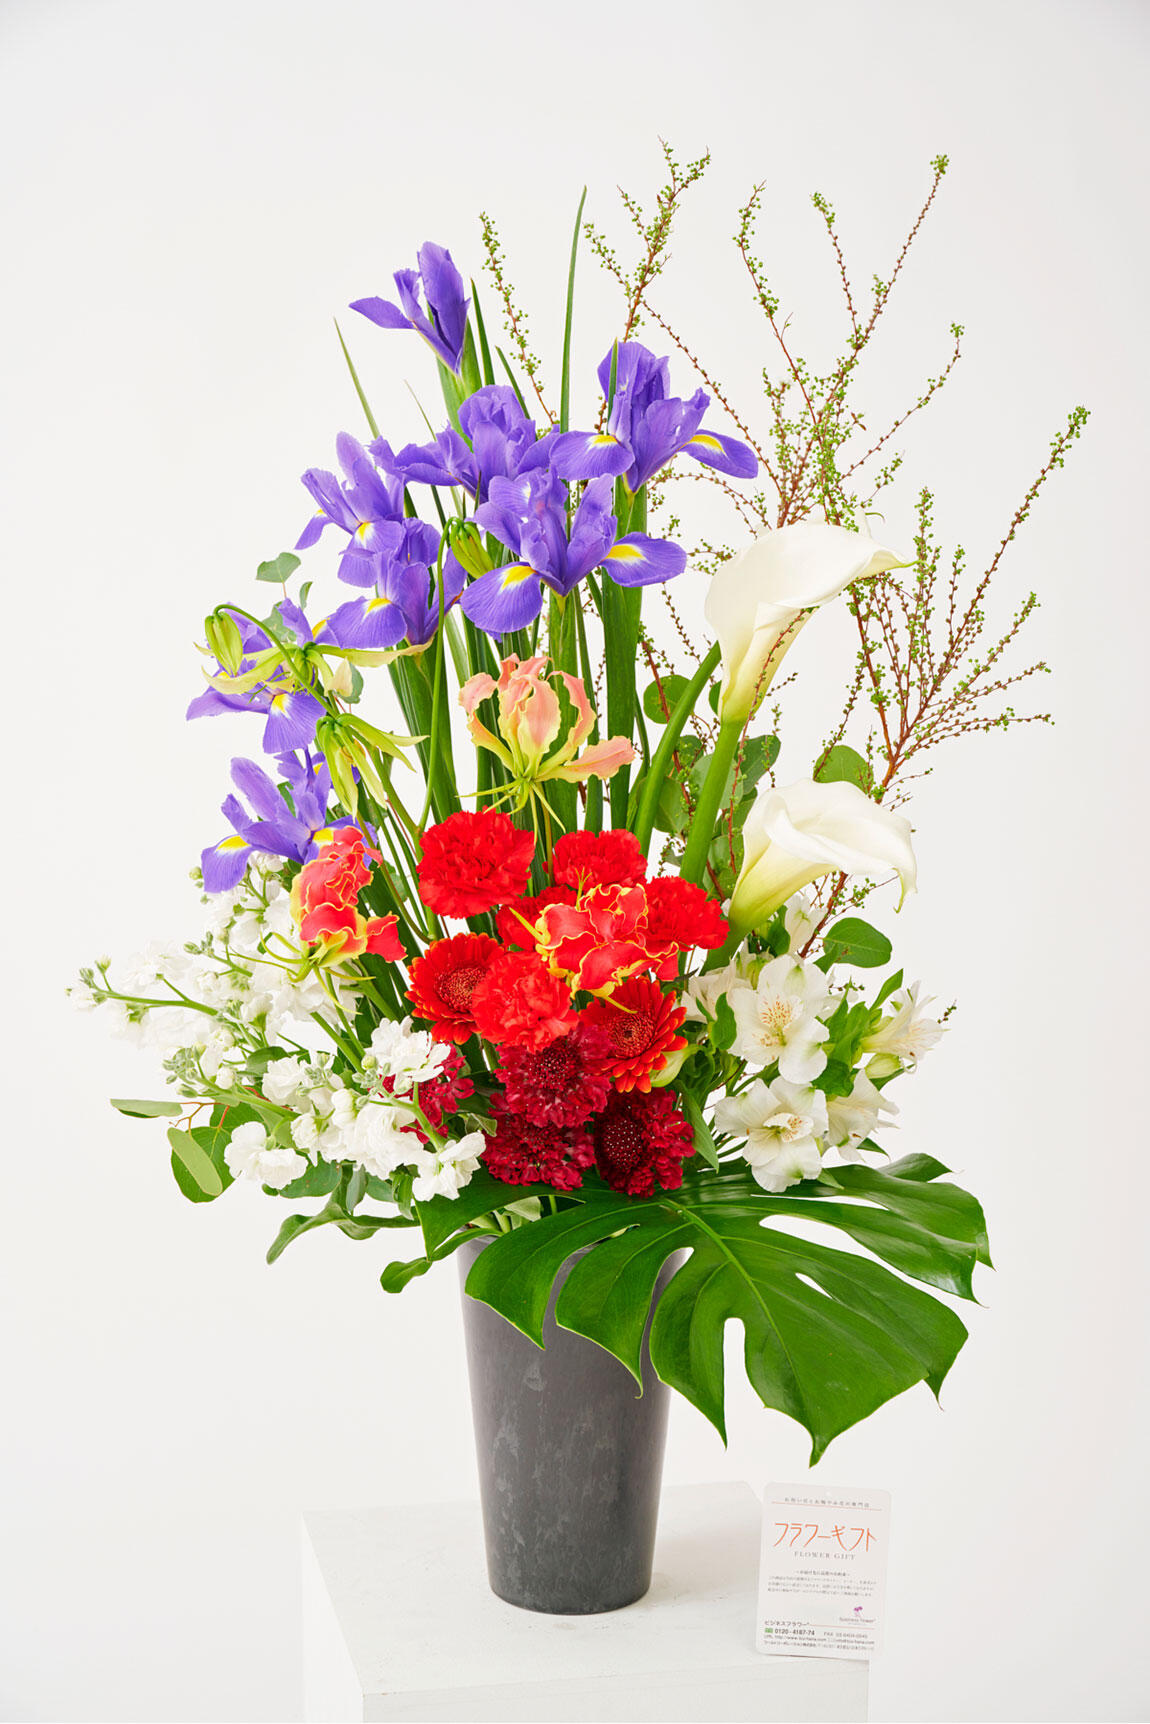 <p>アイリスのアレンジメントフラワーは4月までの春限定のお祝い花ですので、春の開店祝い、開業祝い、移転祝い、開院祝いなどの贈り物にいかがでしょうか。</p>